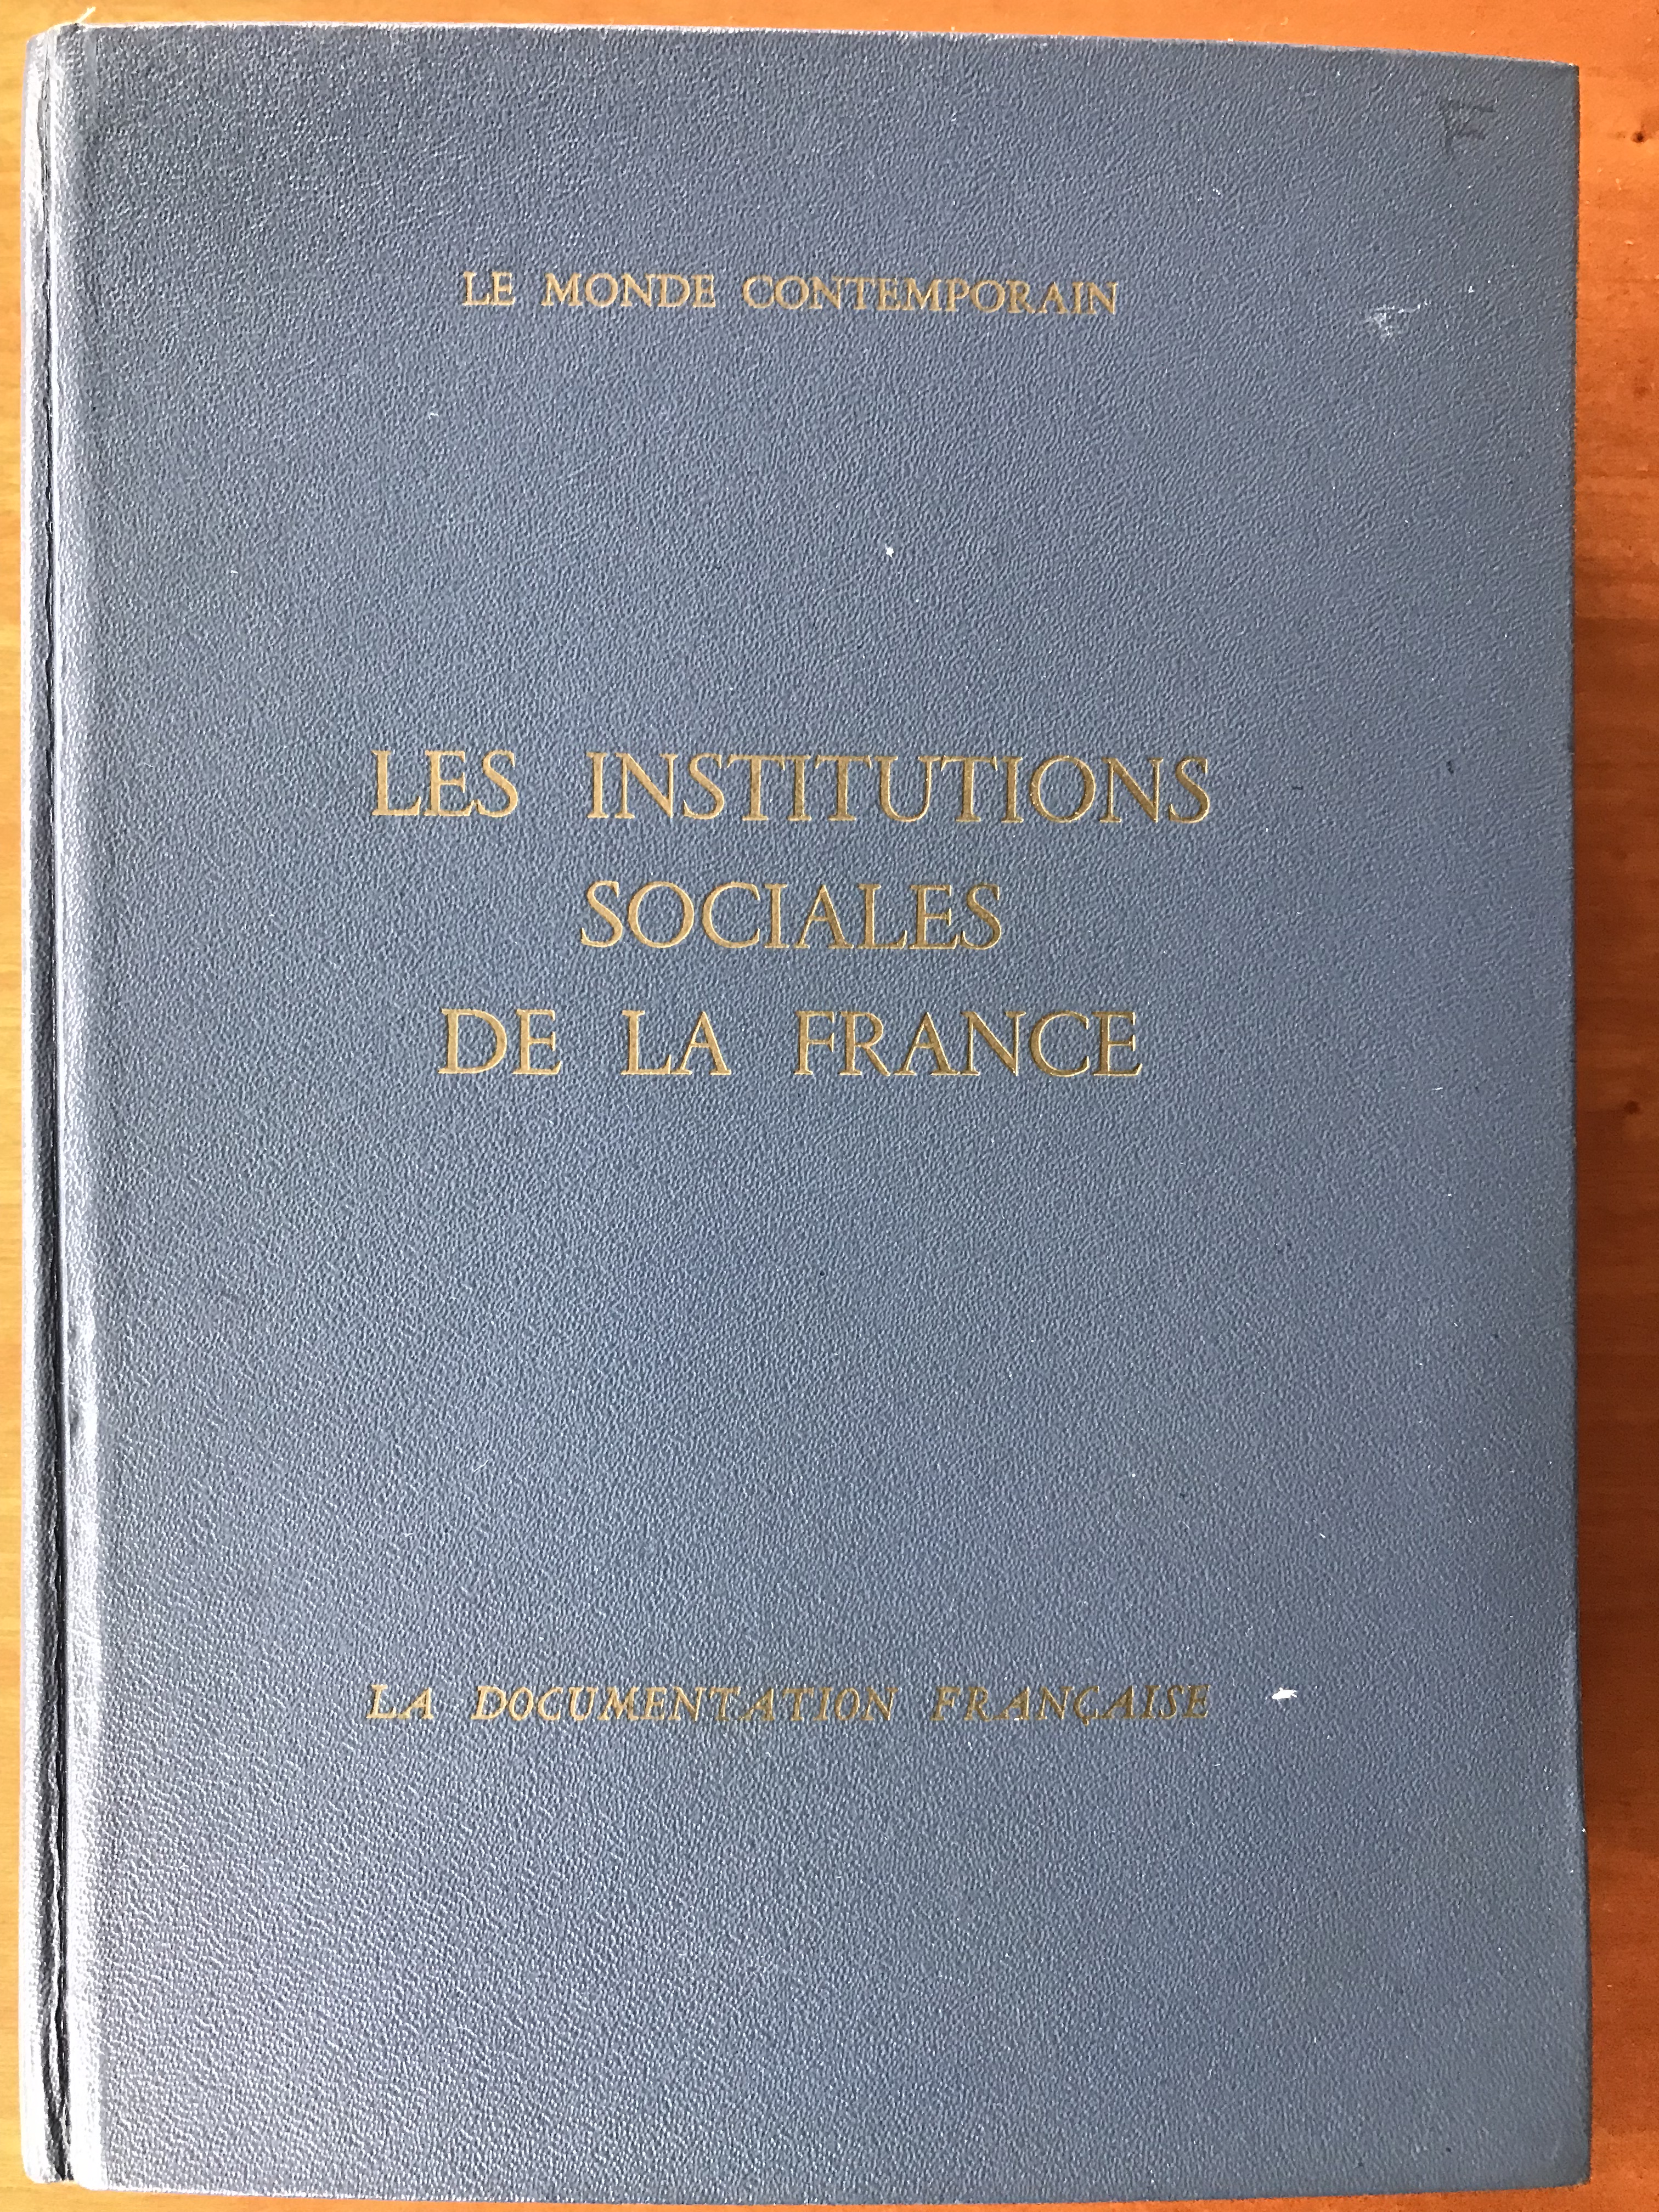 Le Monde contemporain - Les institutions sociales de la France